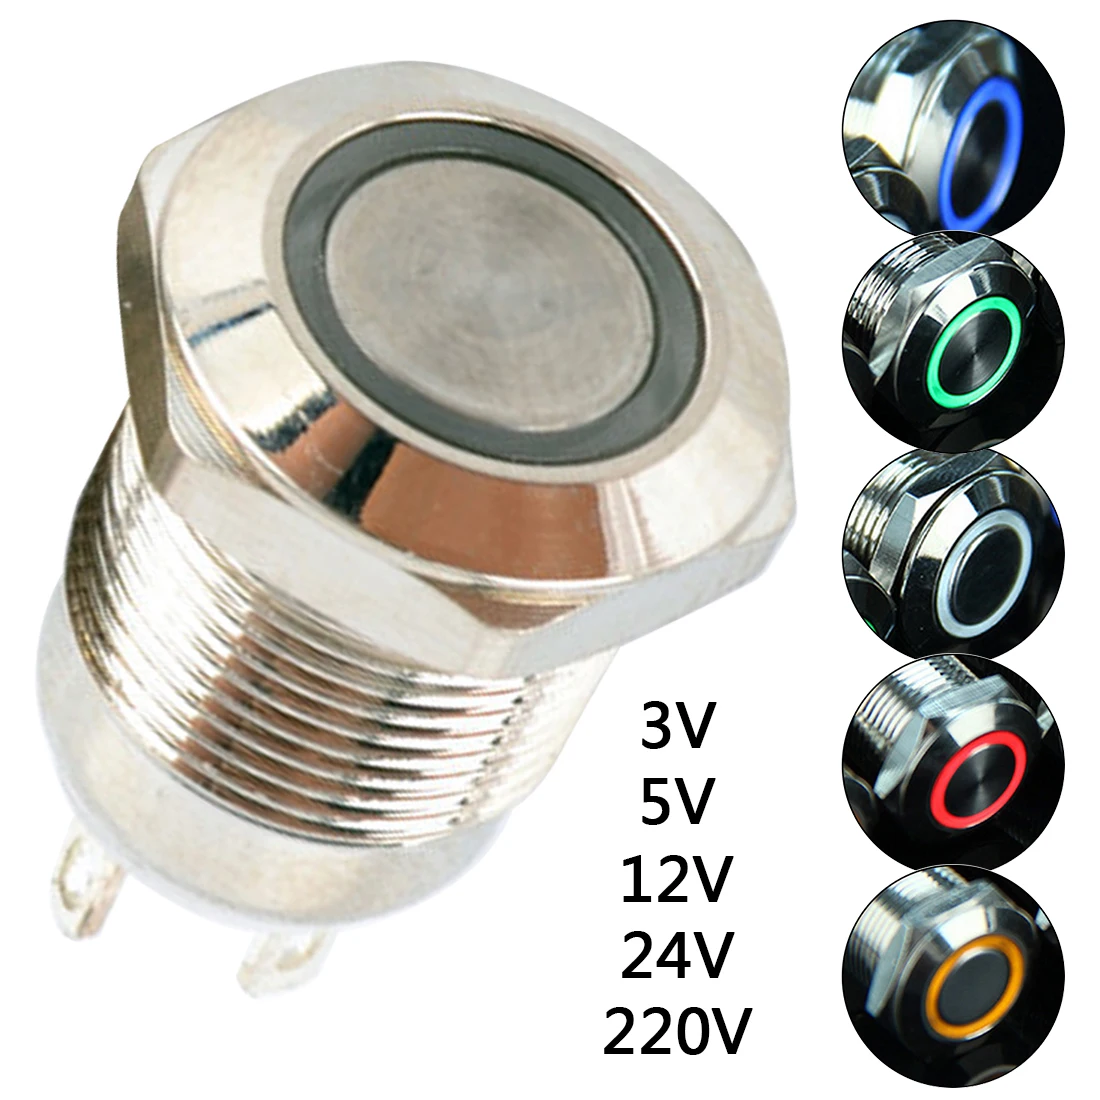 12 мм металлический Мгновенный кнопочный переключатель светодиодный светильник лампа освещение 3 в 5 в 12 В 24 В 220 В водонепроницаемый автомобильный двигатель PC power Start